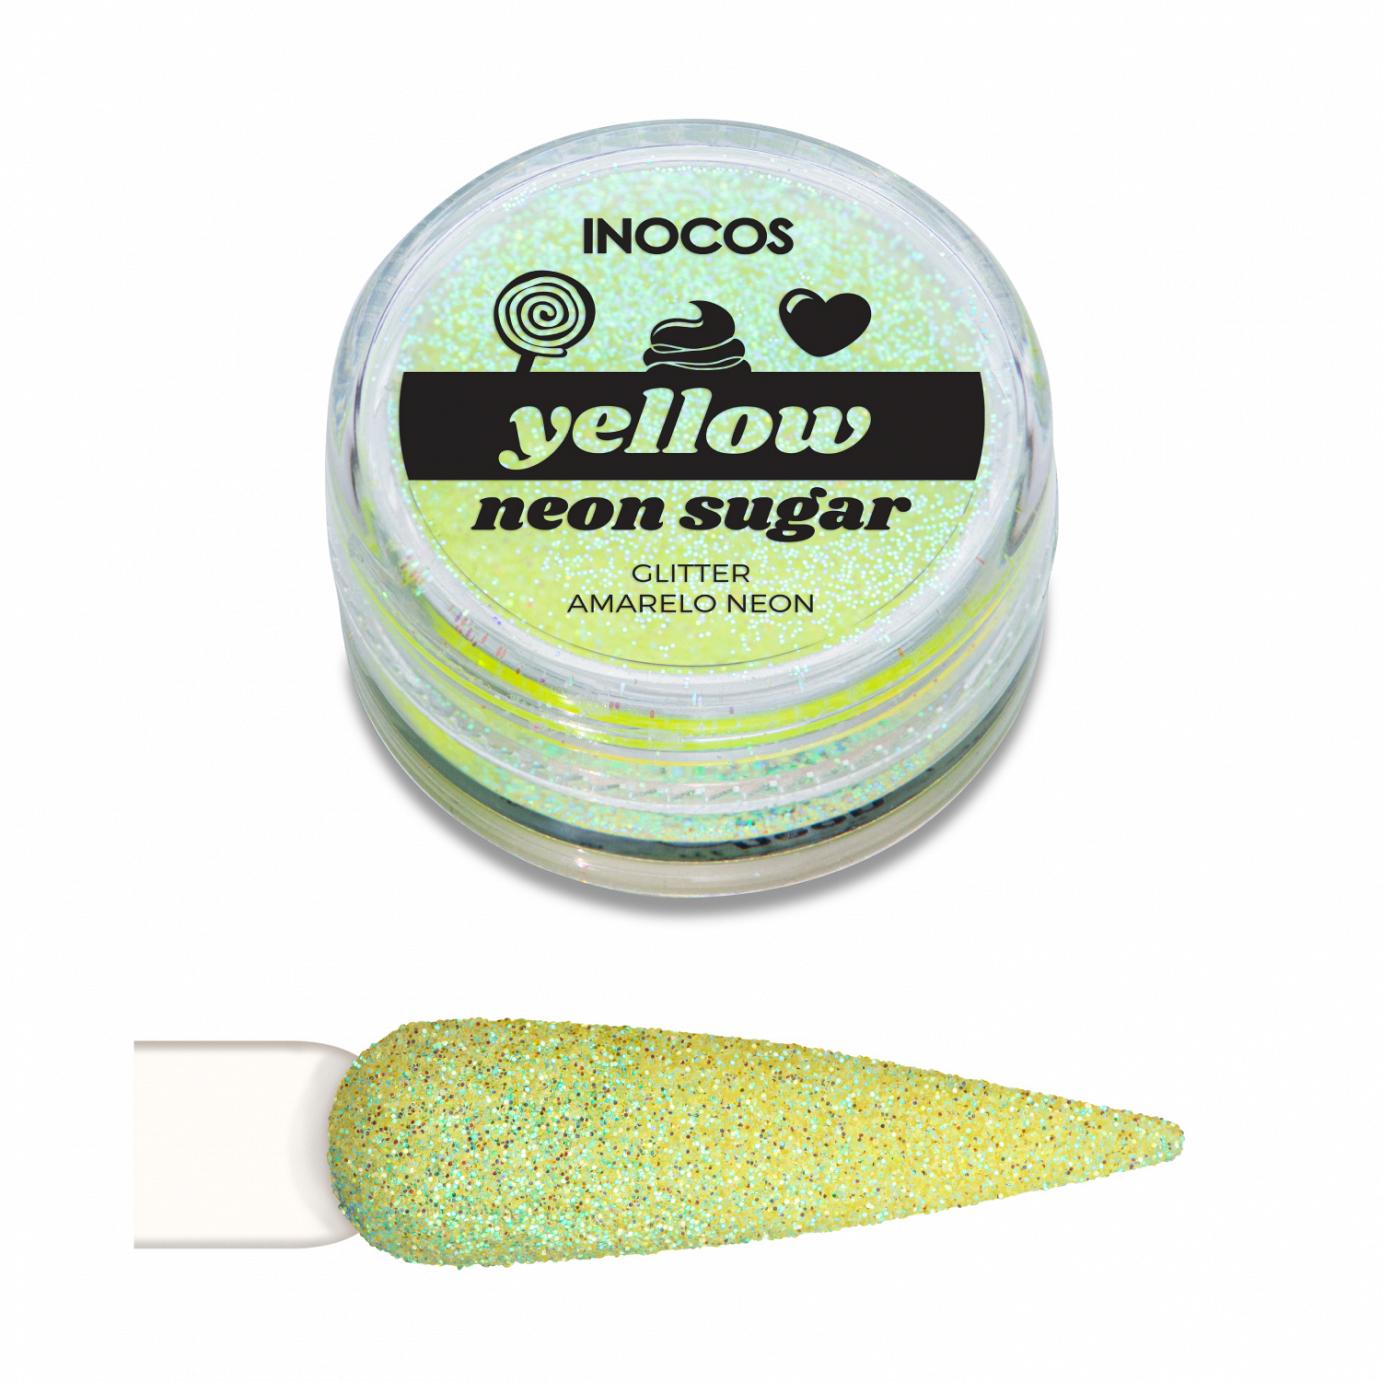 Inocos glitter para uñas polvo Neon Sugar amarillo